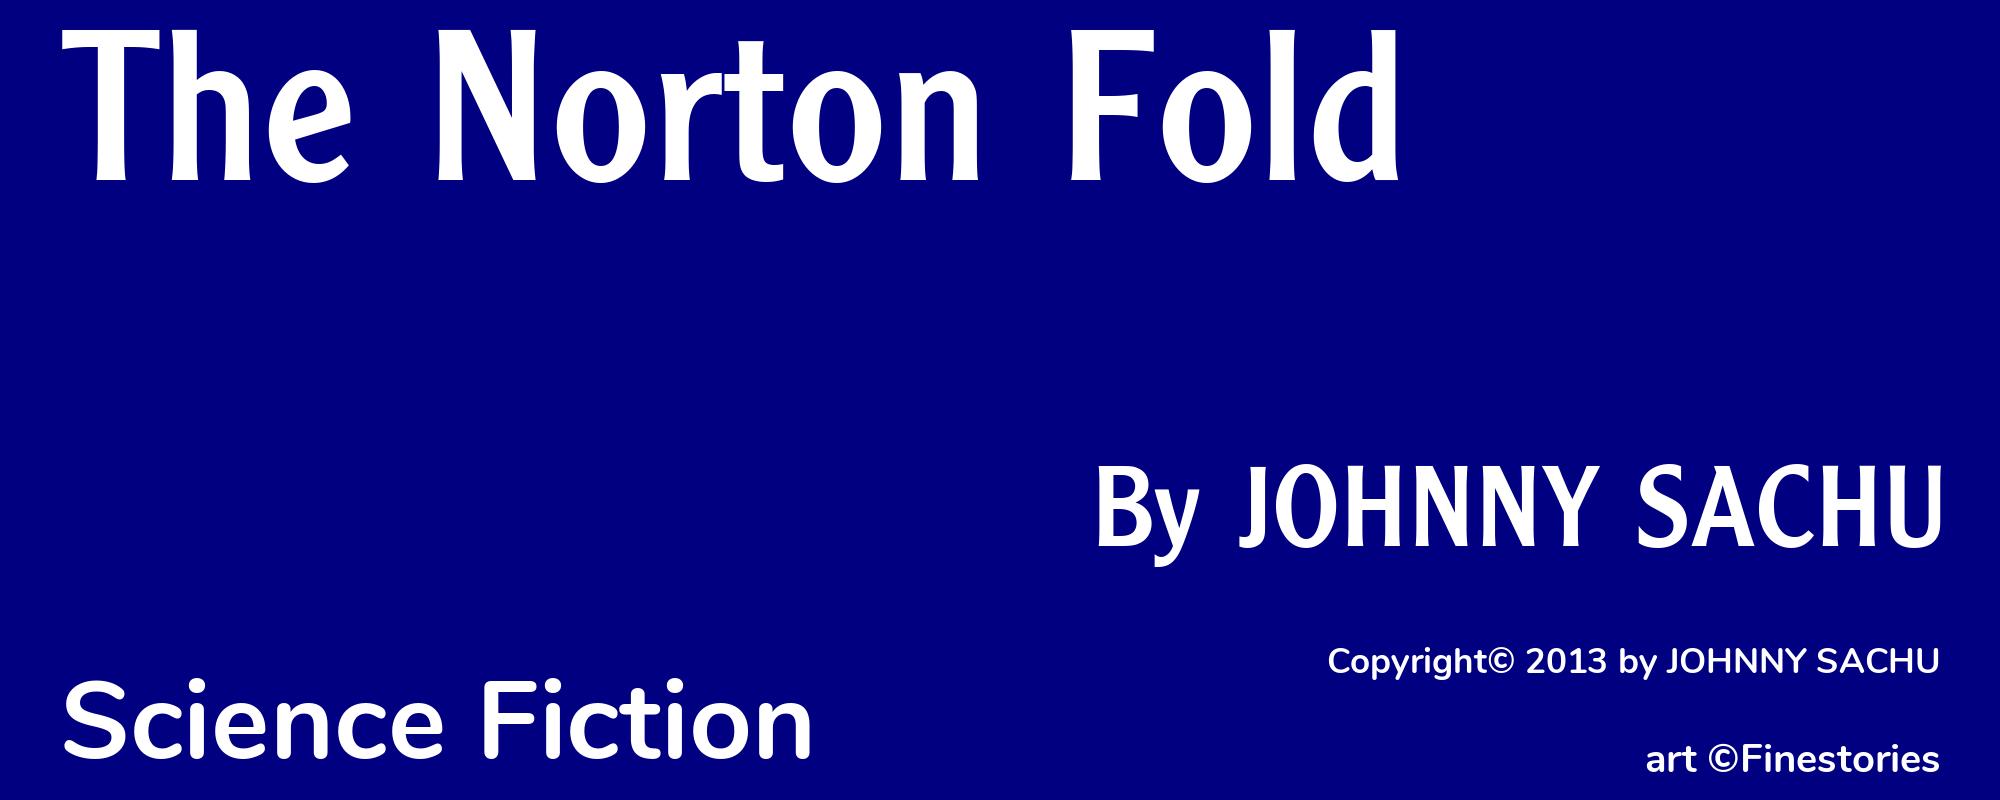 The Norton Fold - Cover